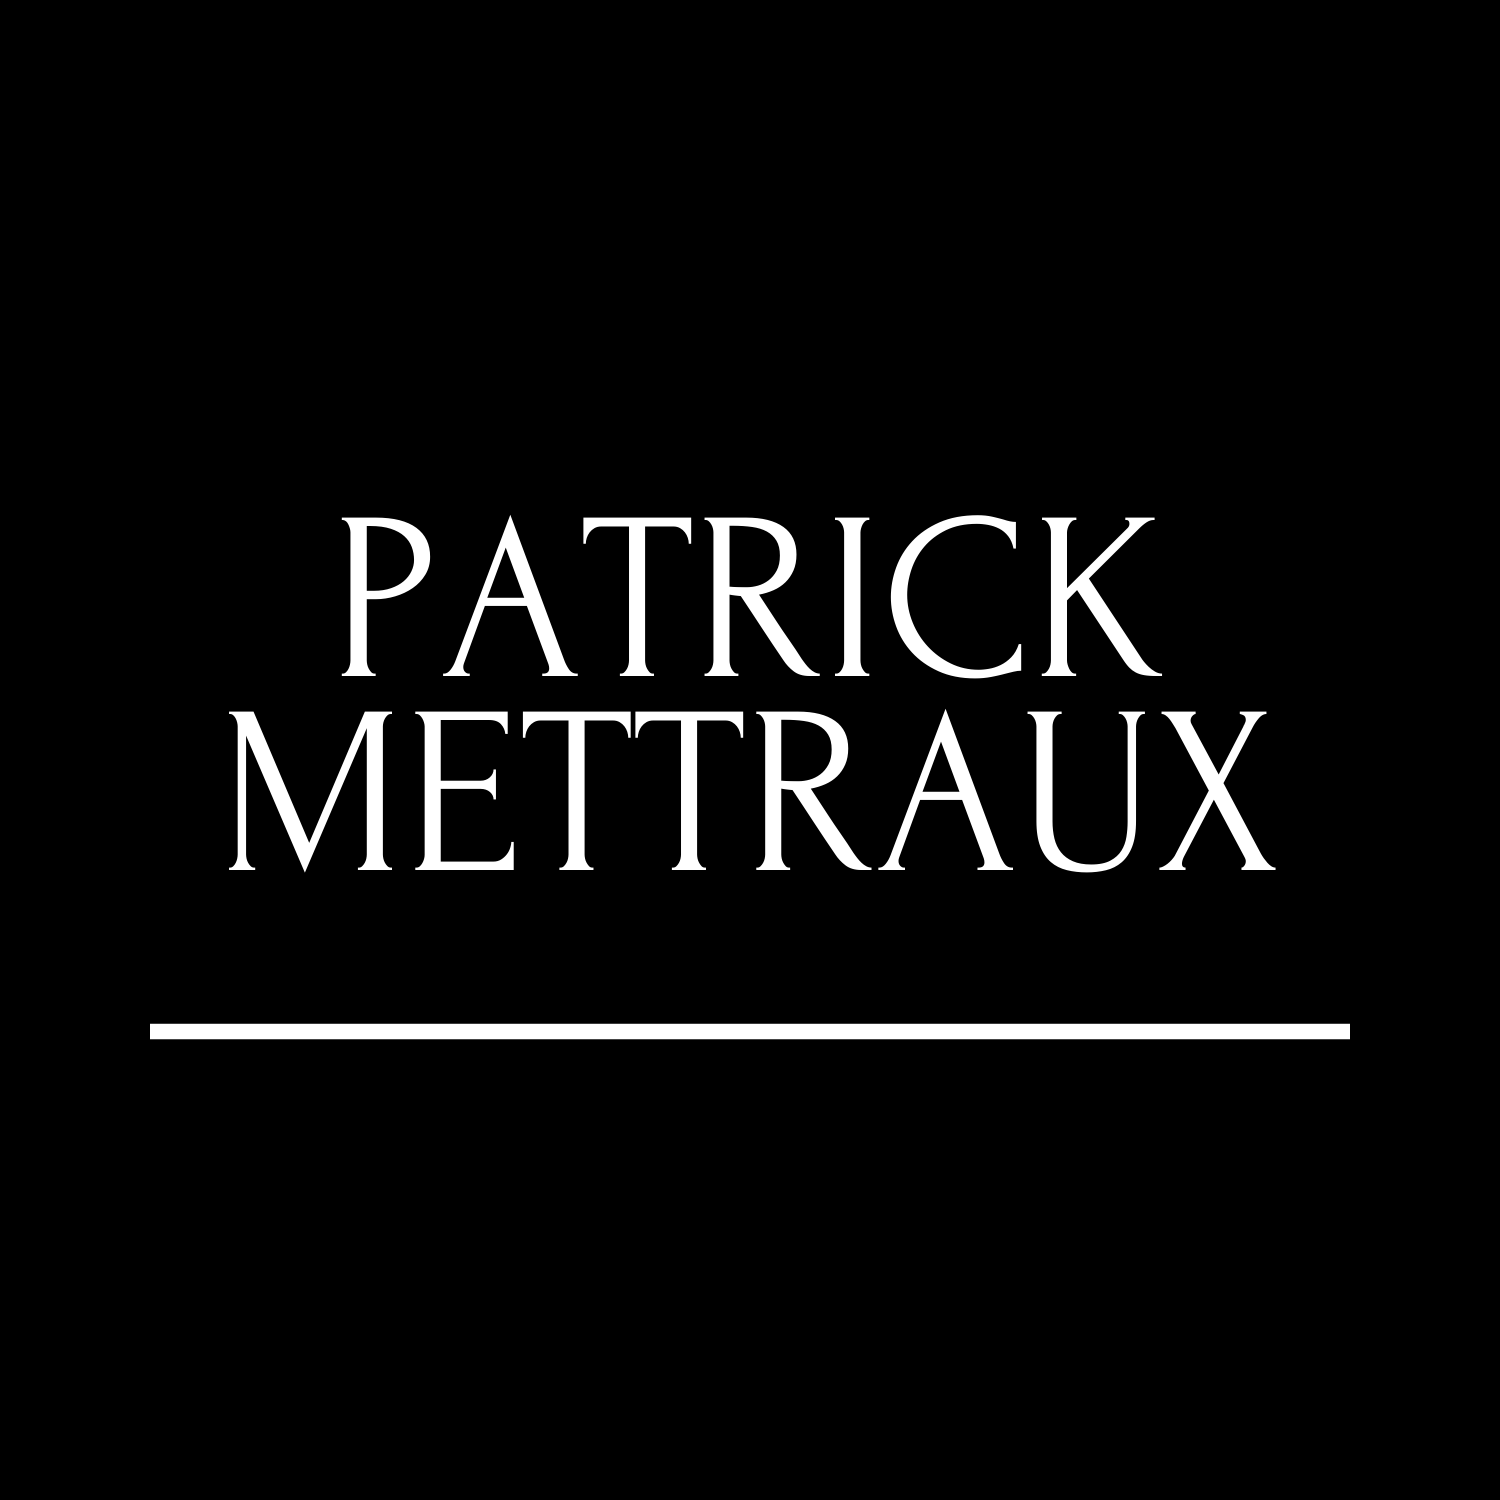 Patrick Mettraux